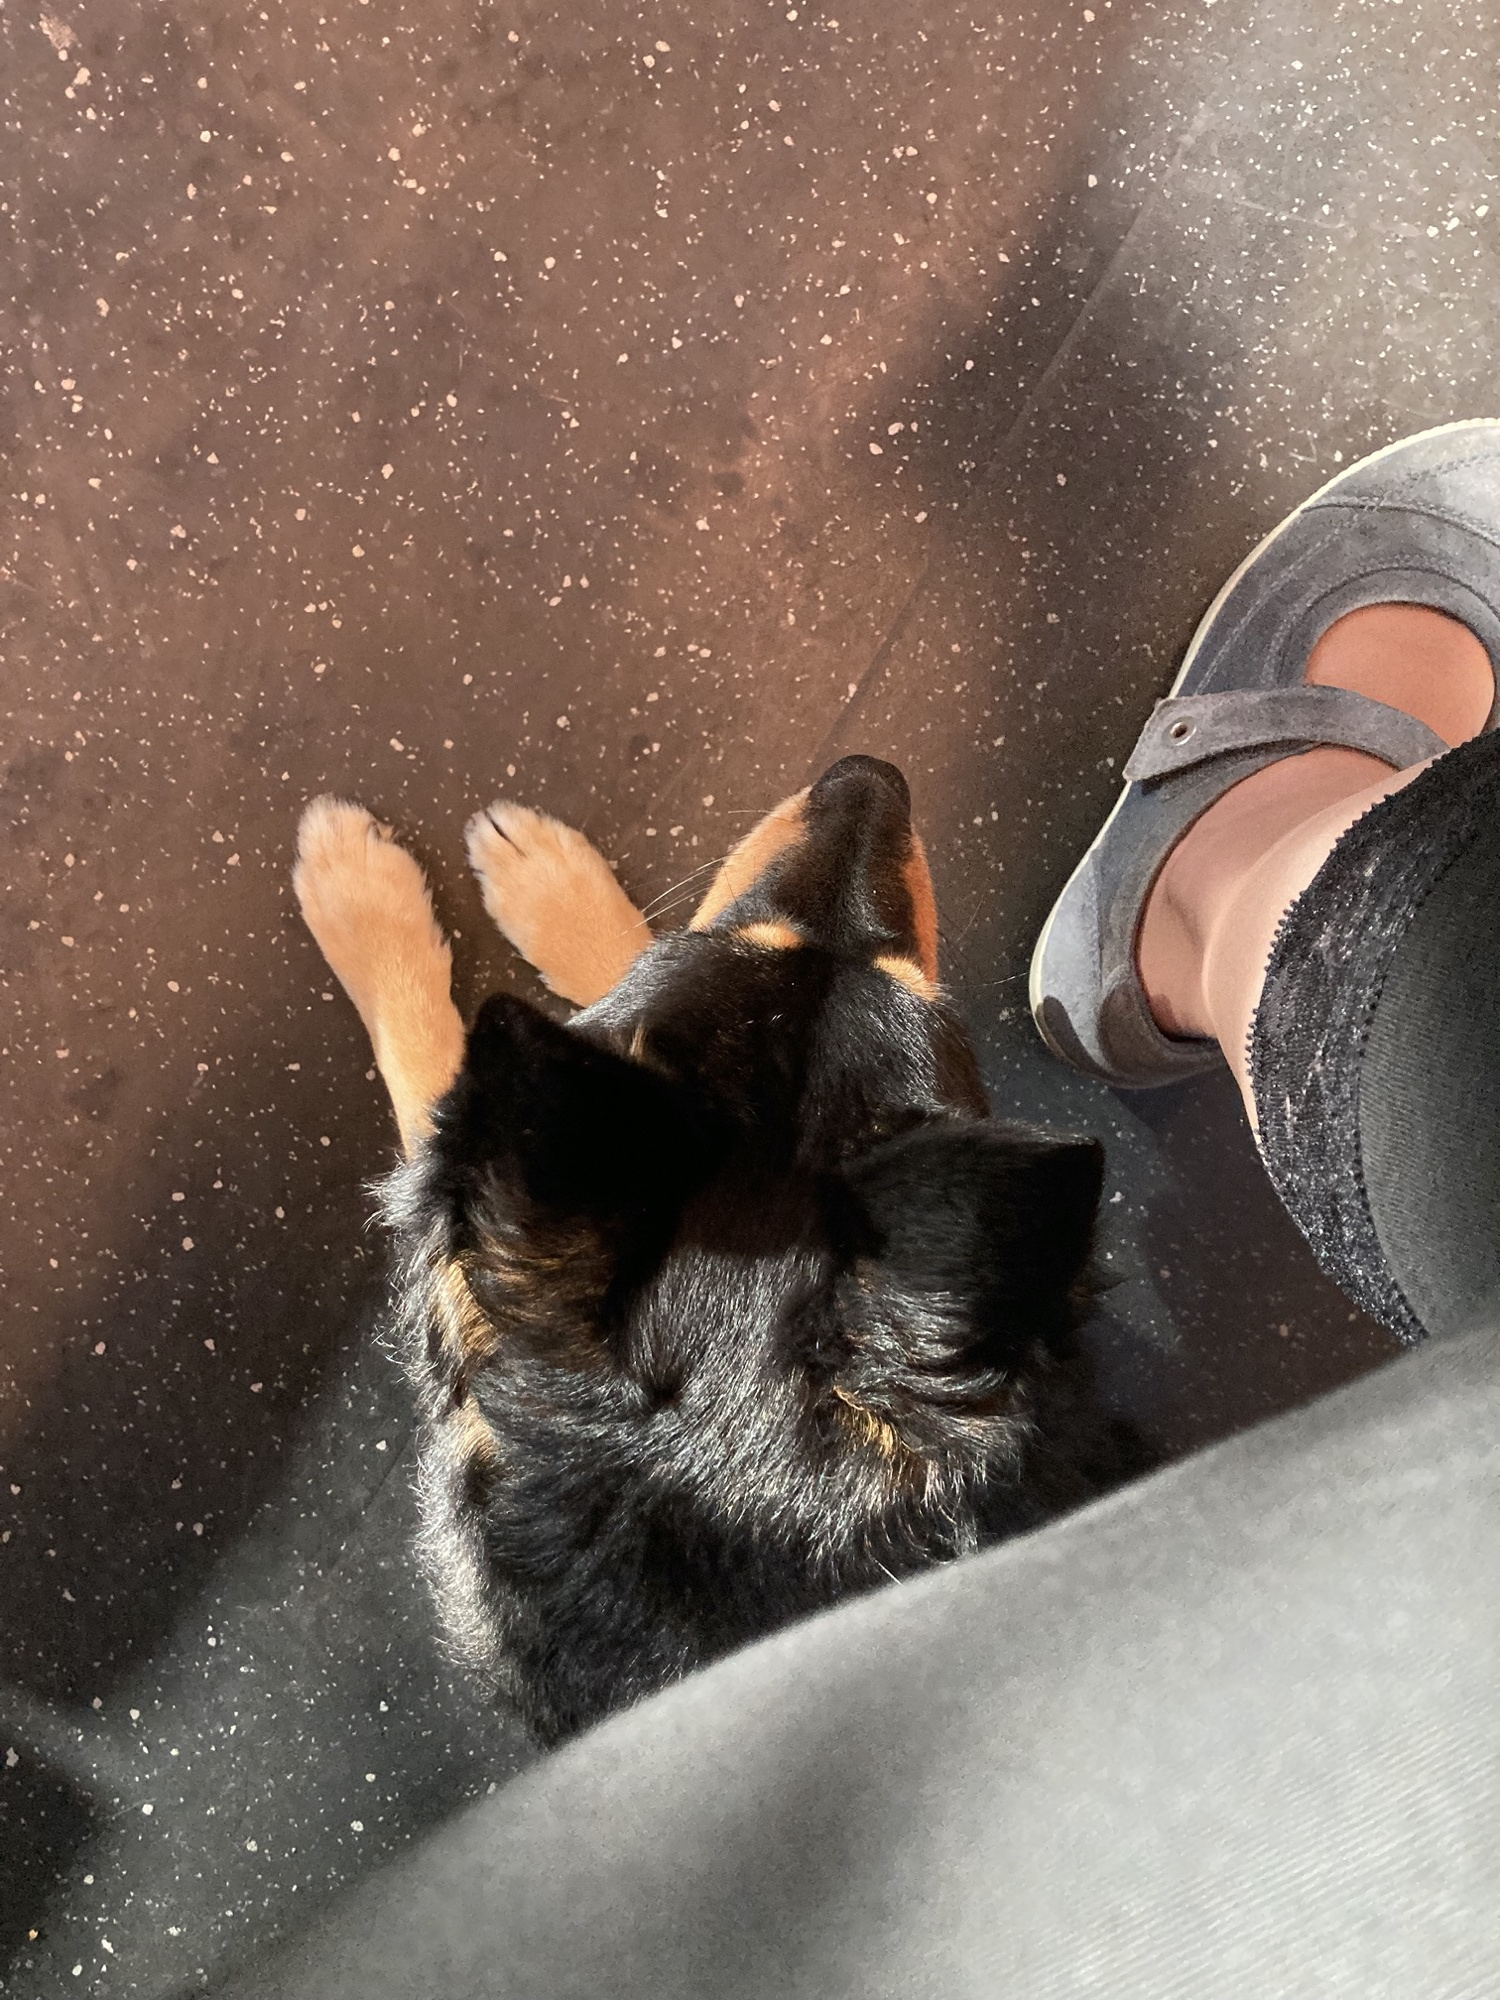 schwarzer Hund mit hellbraunen Vorderpfoten liegt auf dem Boden in einem Zugwaggon, Blick von oben, neben dem Hund sind Schuh und Bein einer Person zu sehen